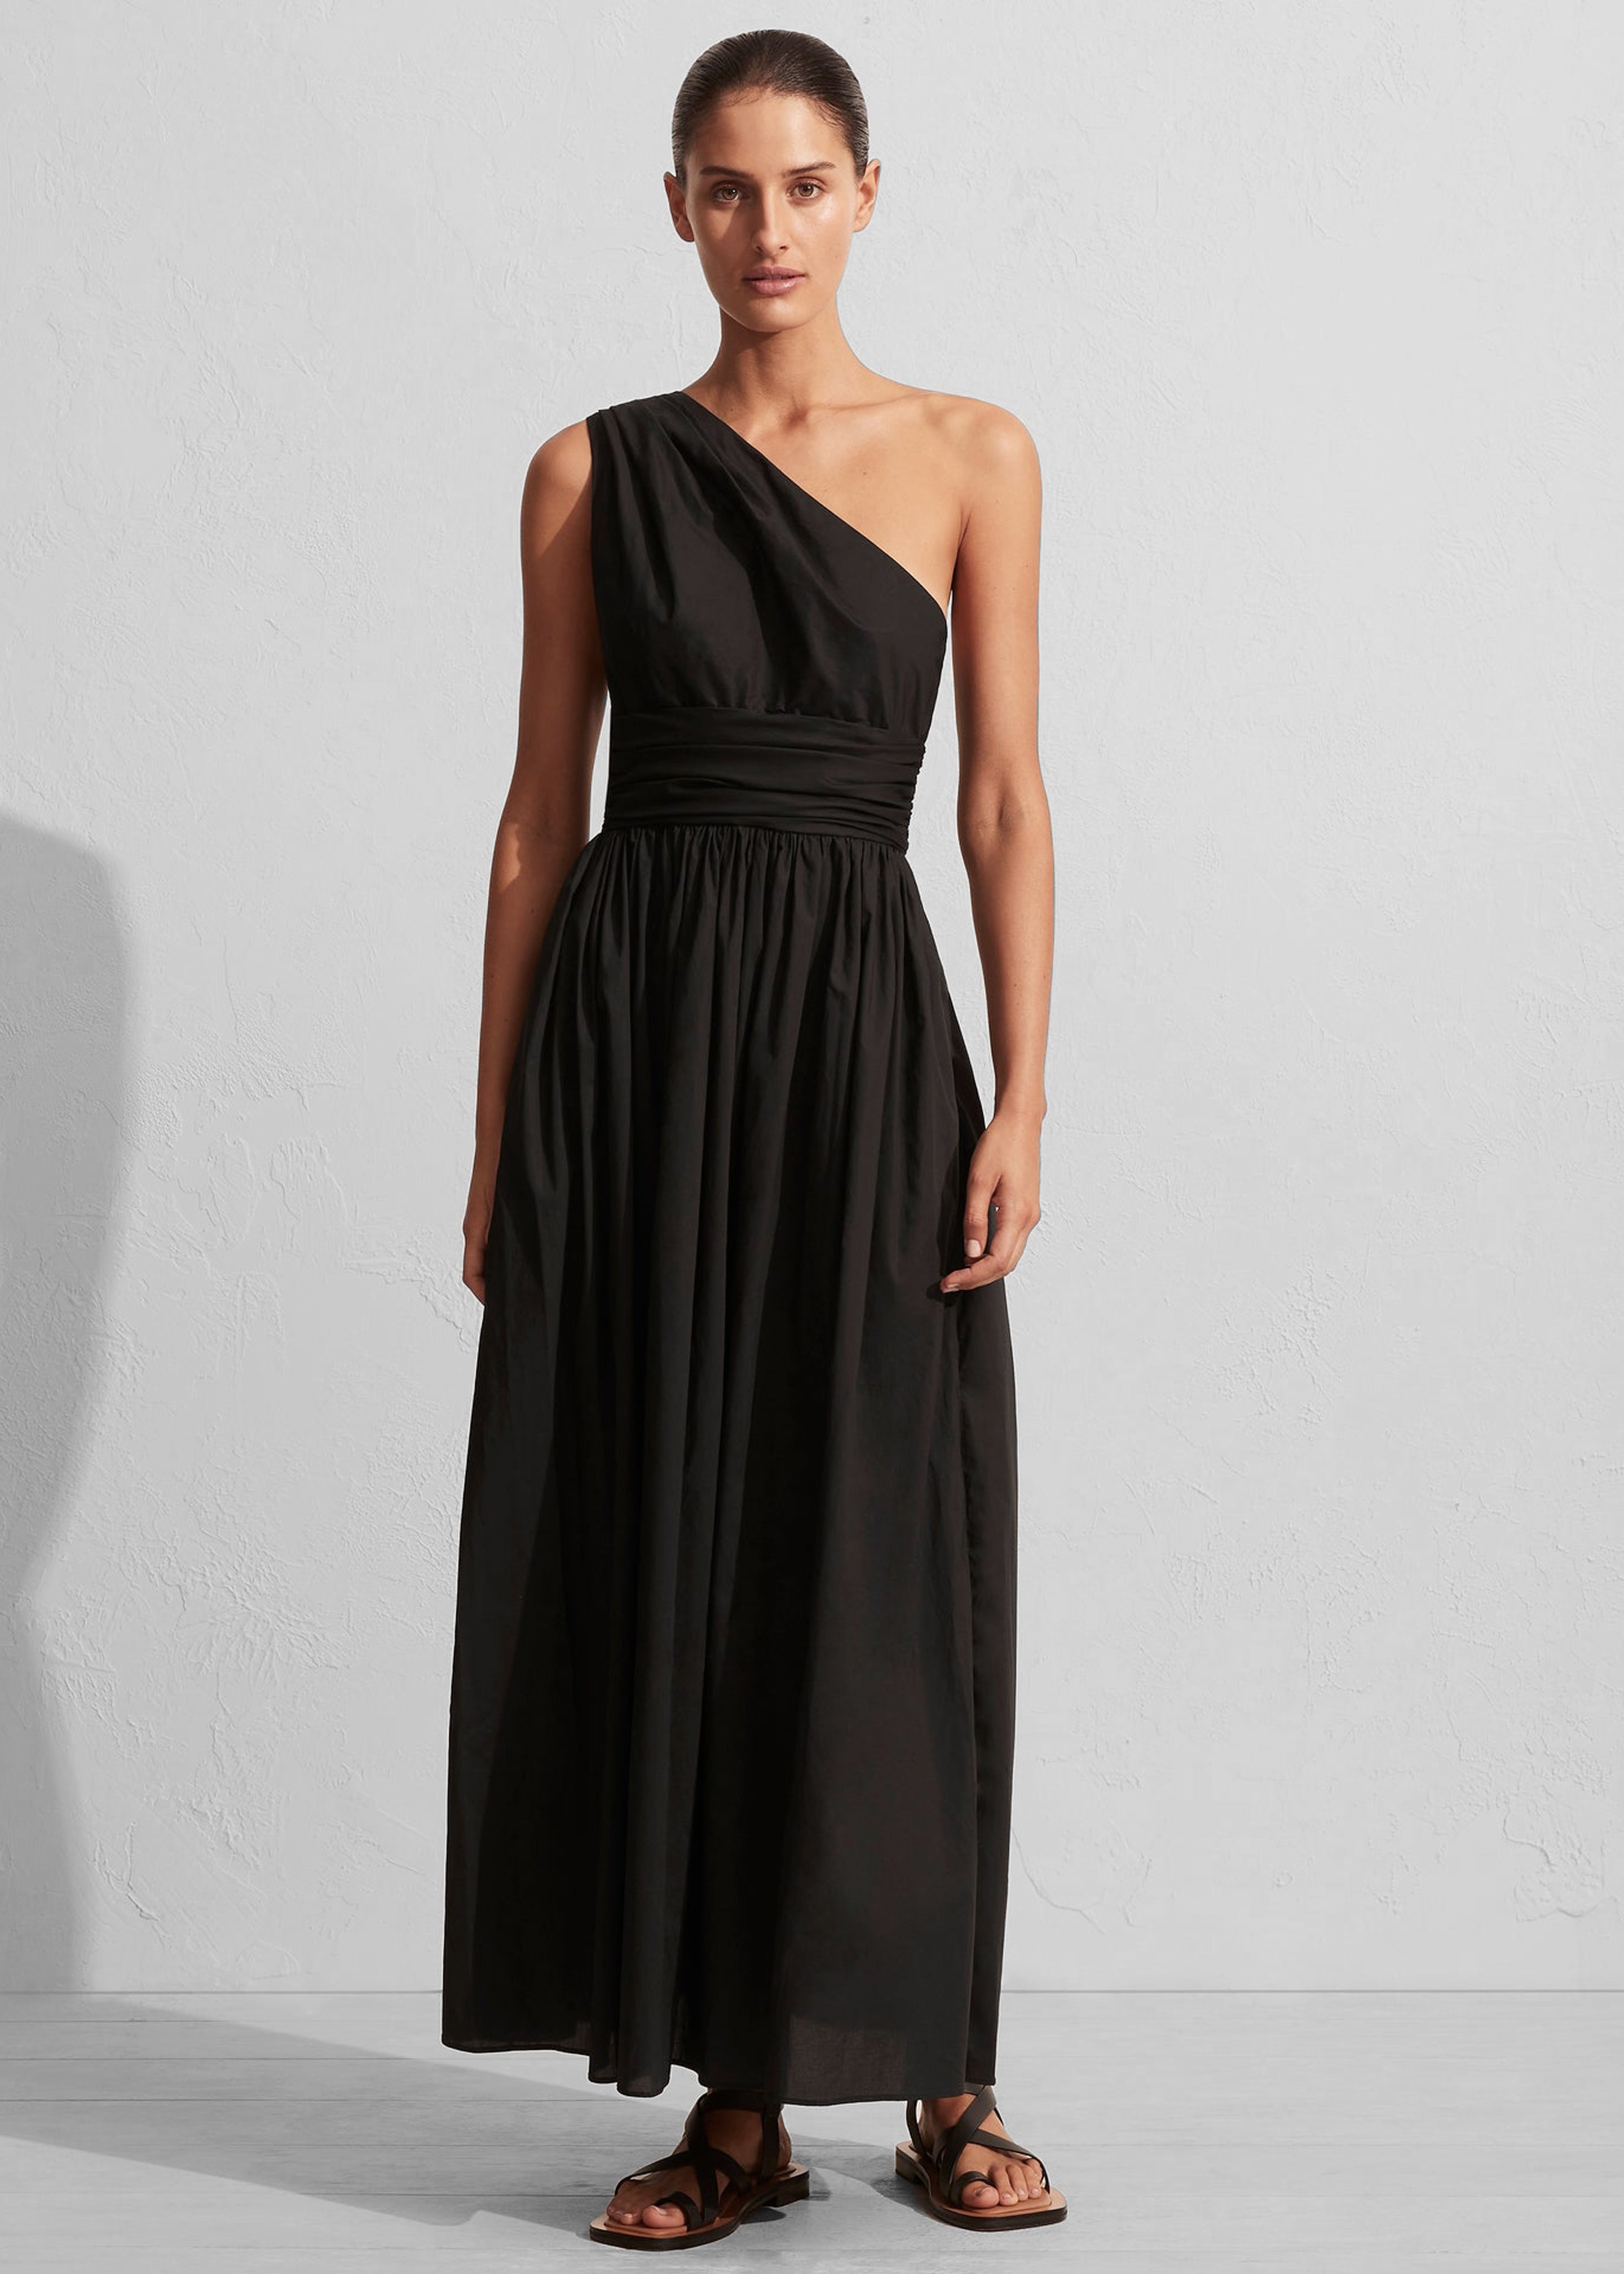 Matteau Gathered One Shoulder Dress - Black – The Frankie Shop